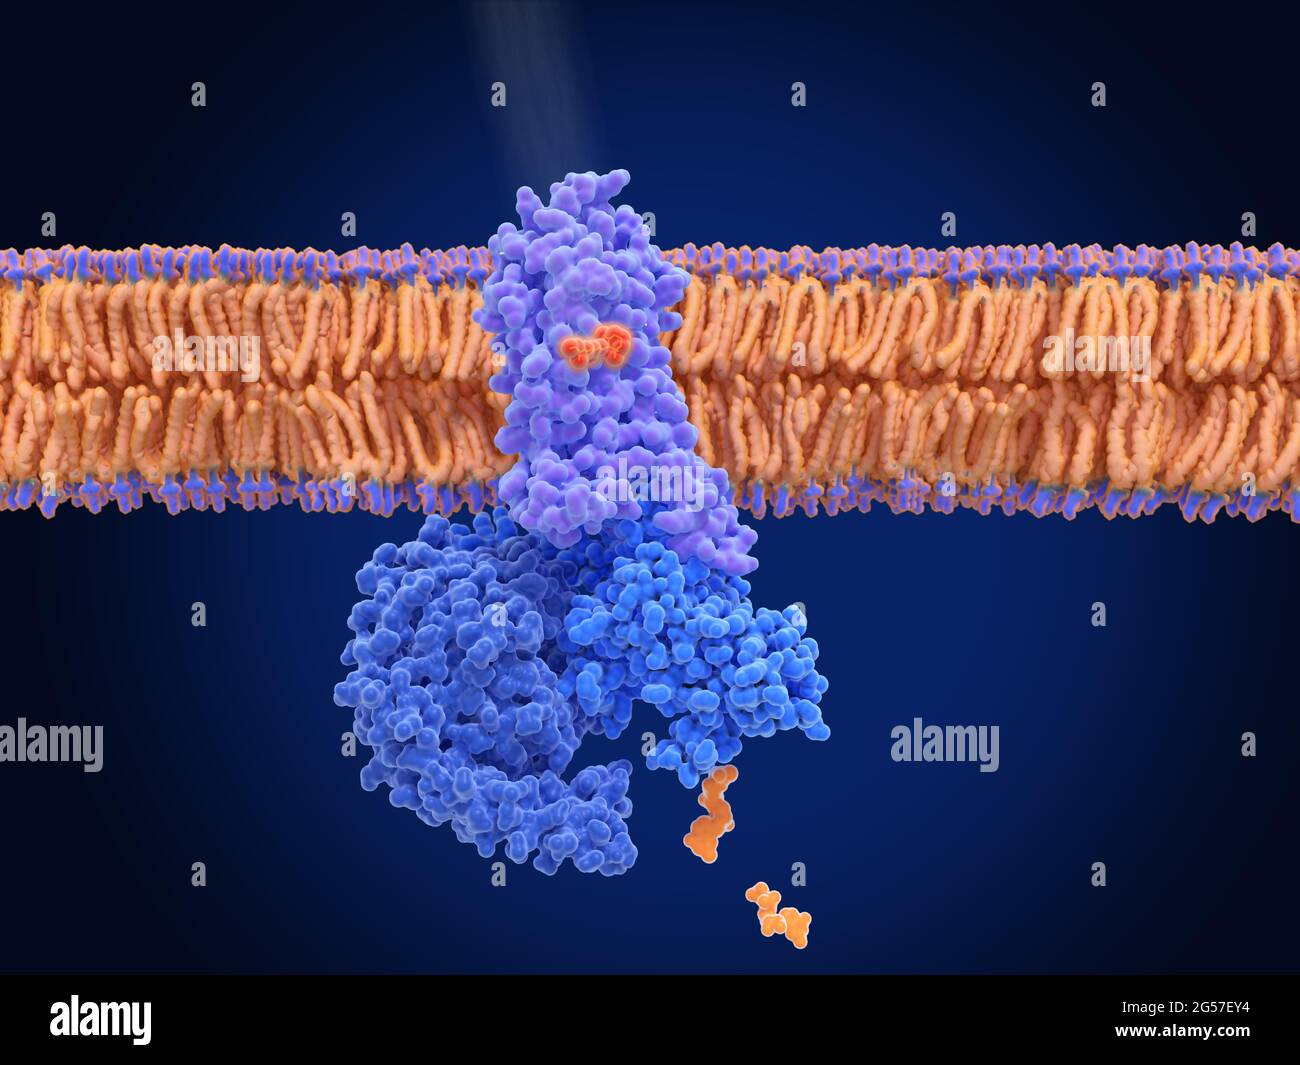 Activation of rhodopsin by light, molecular model Stock Photo